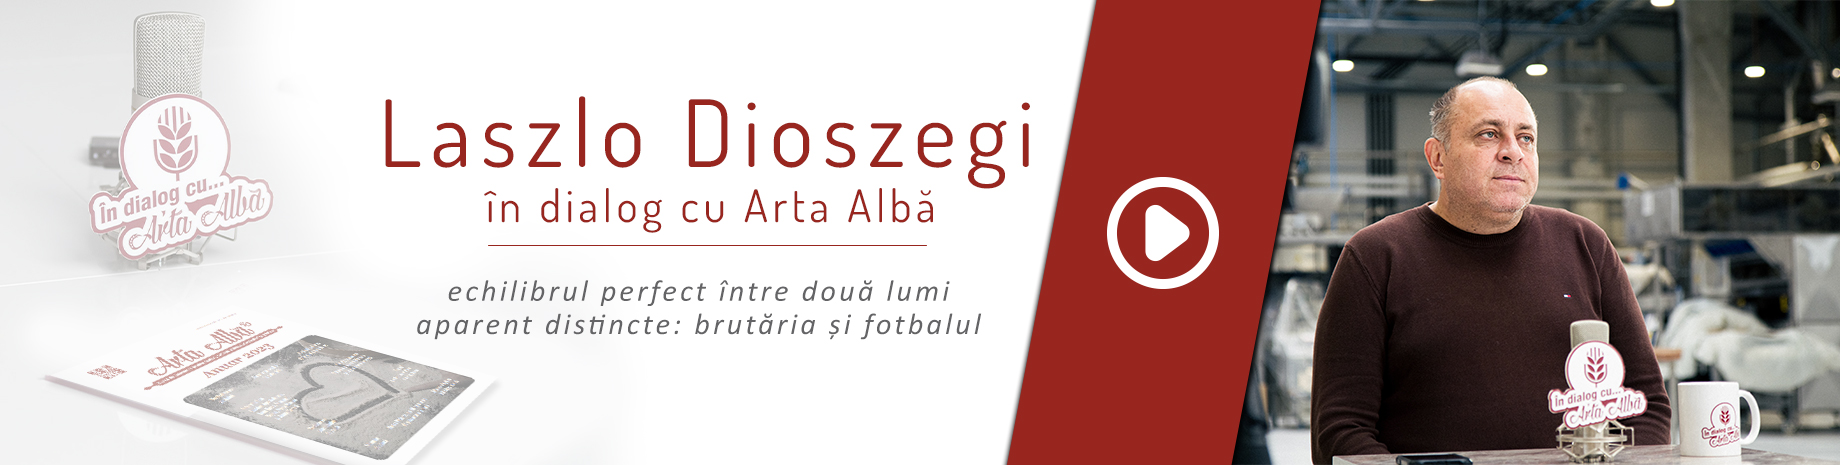 Laszlo Dioszegi in dialog cu Arta Alba